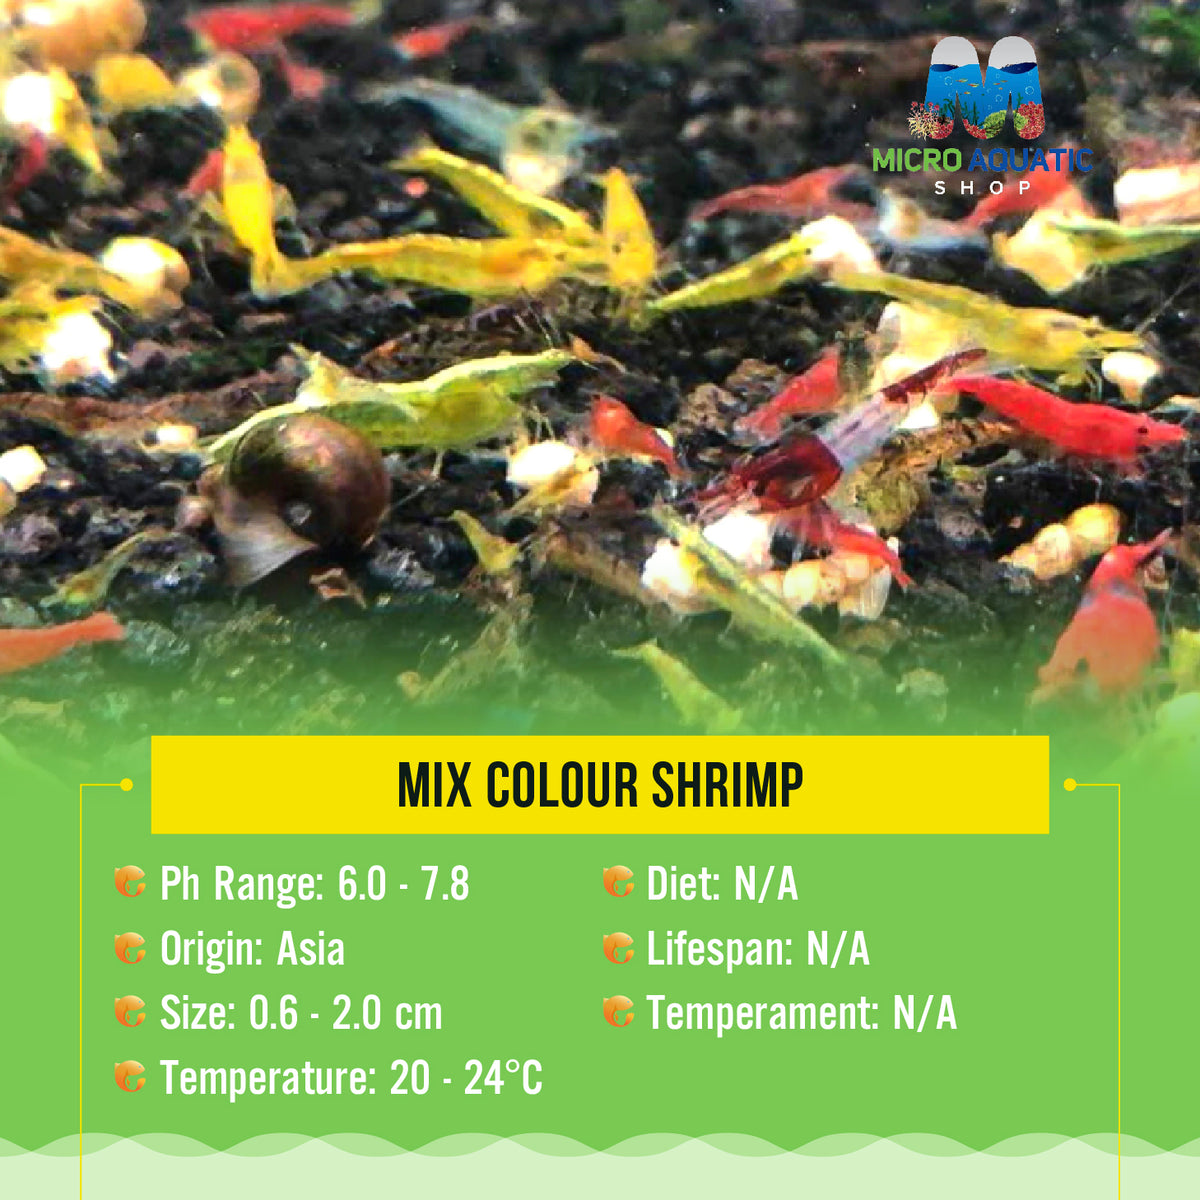 Mix Colour Shrimp